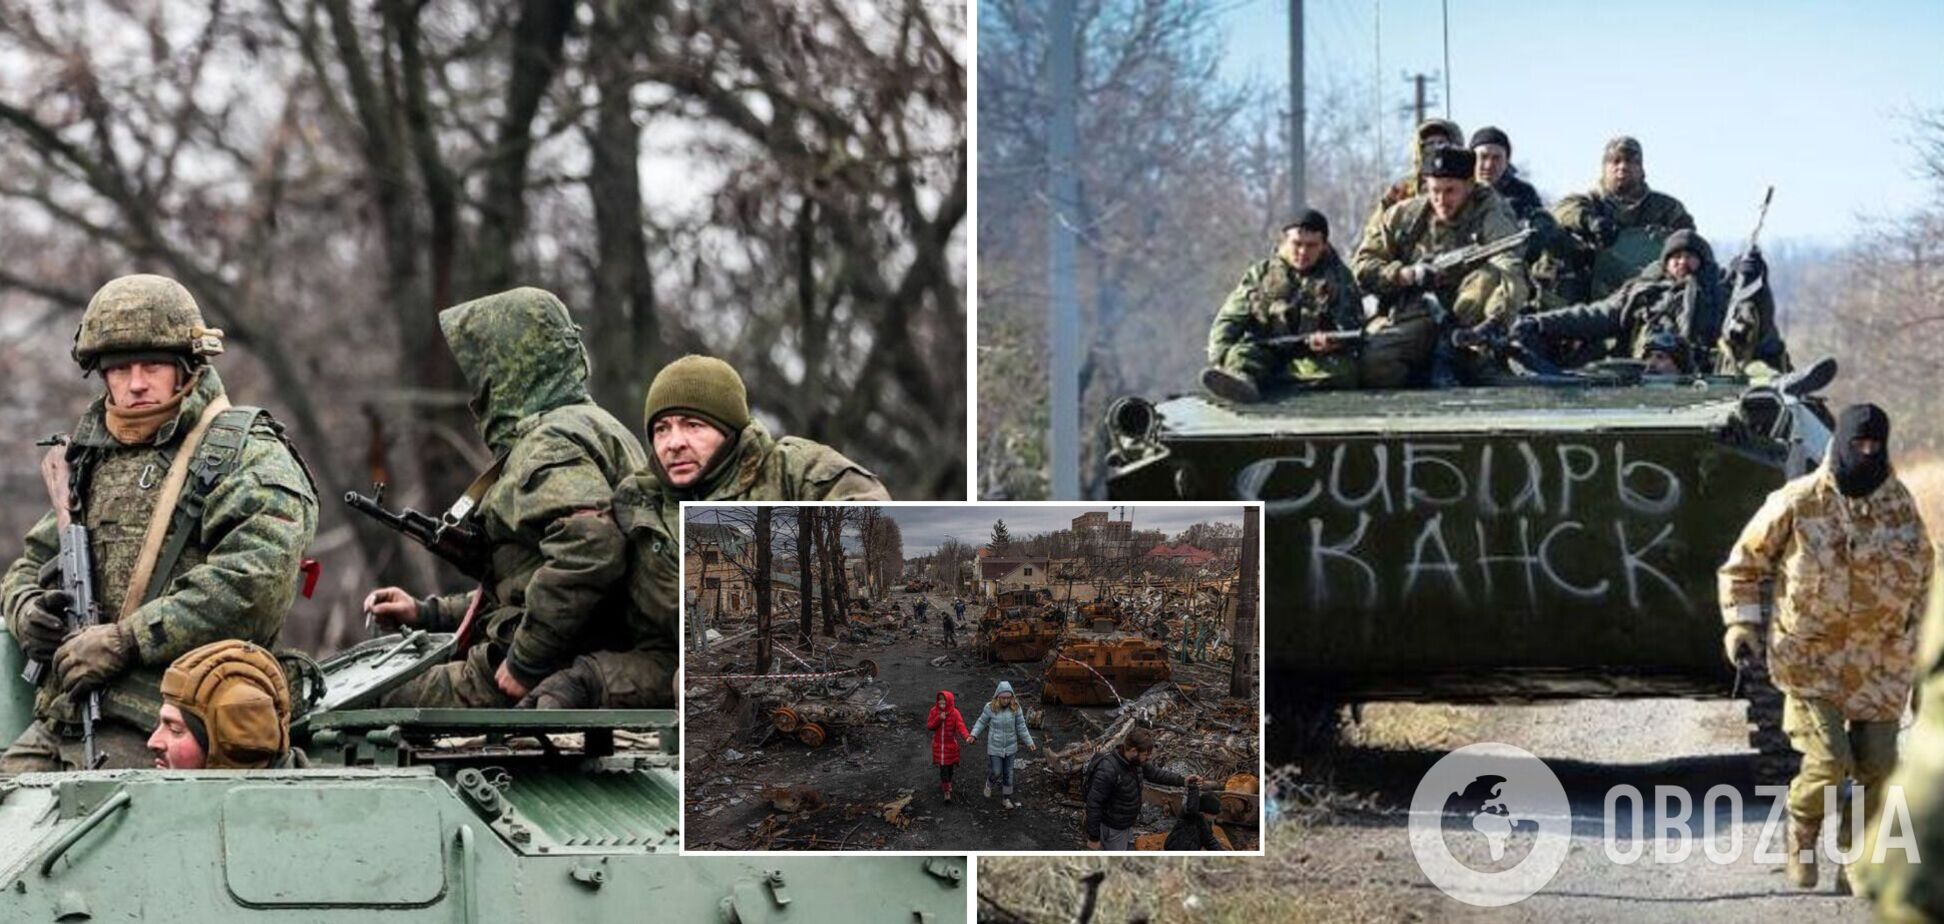 'Привезли 500 человек в пакетах': оккупант признал огромные потери армии РФ. Аудиоперехват СБУ